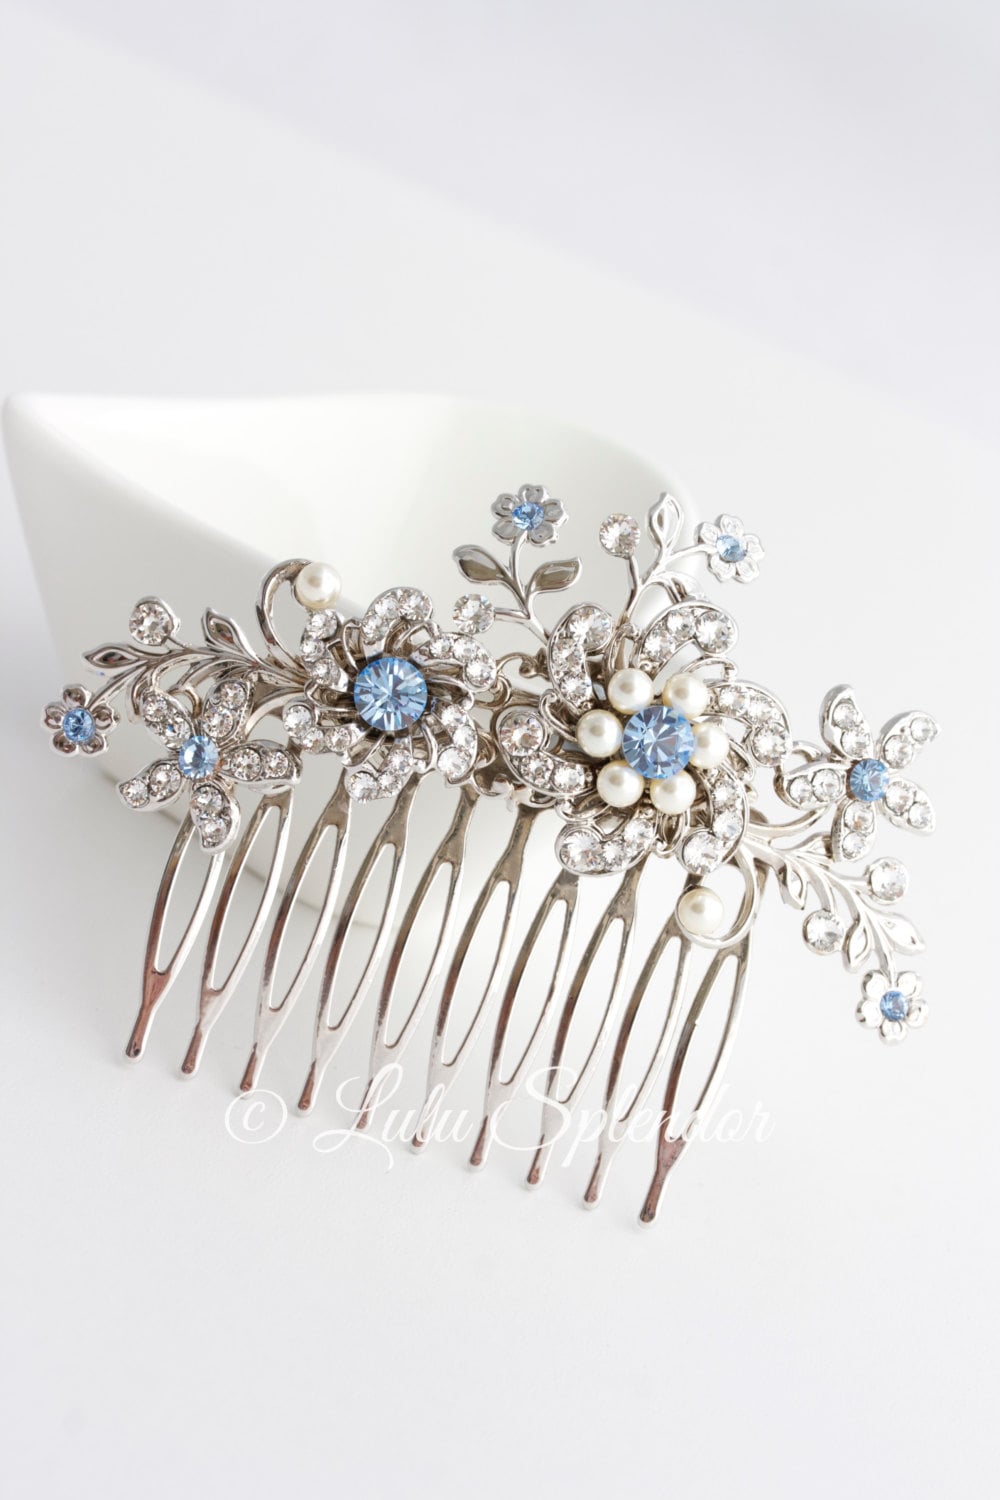 Wedding Hair Comb Light Sapphire Blue Bridal Hair Accessories